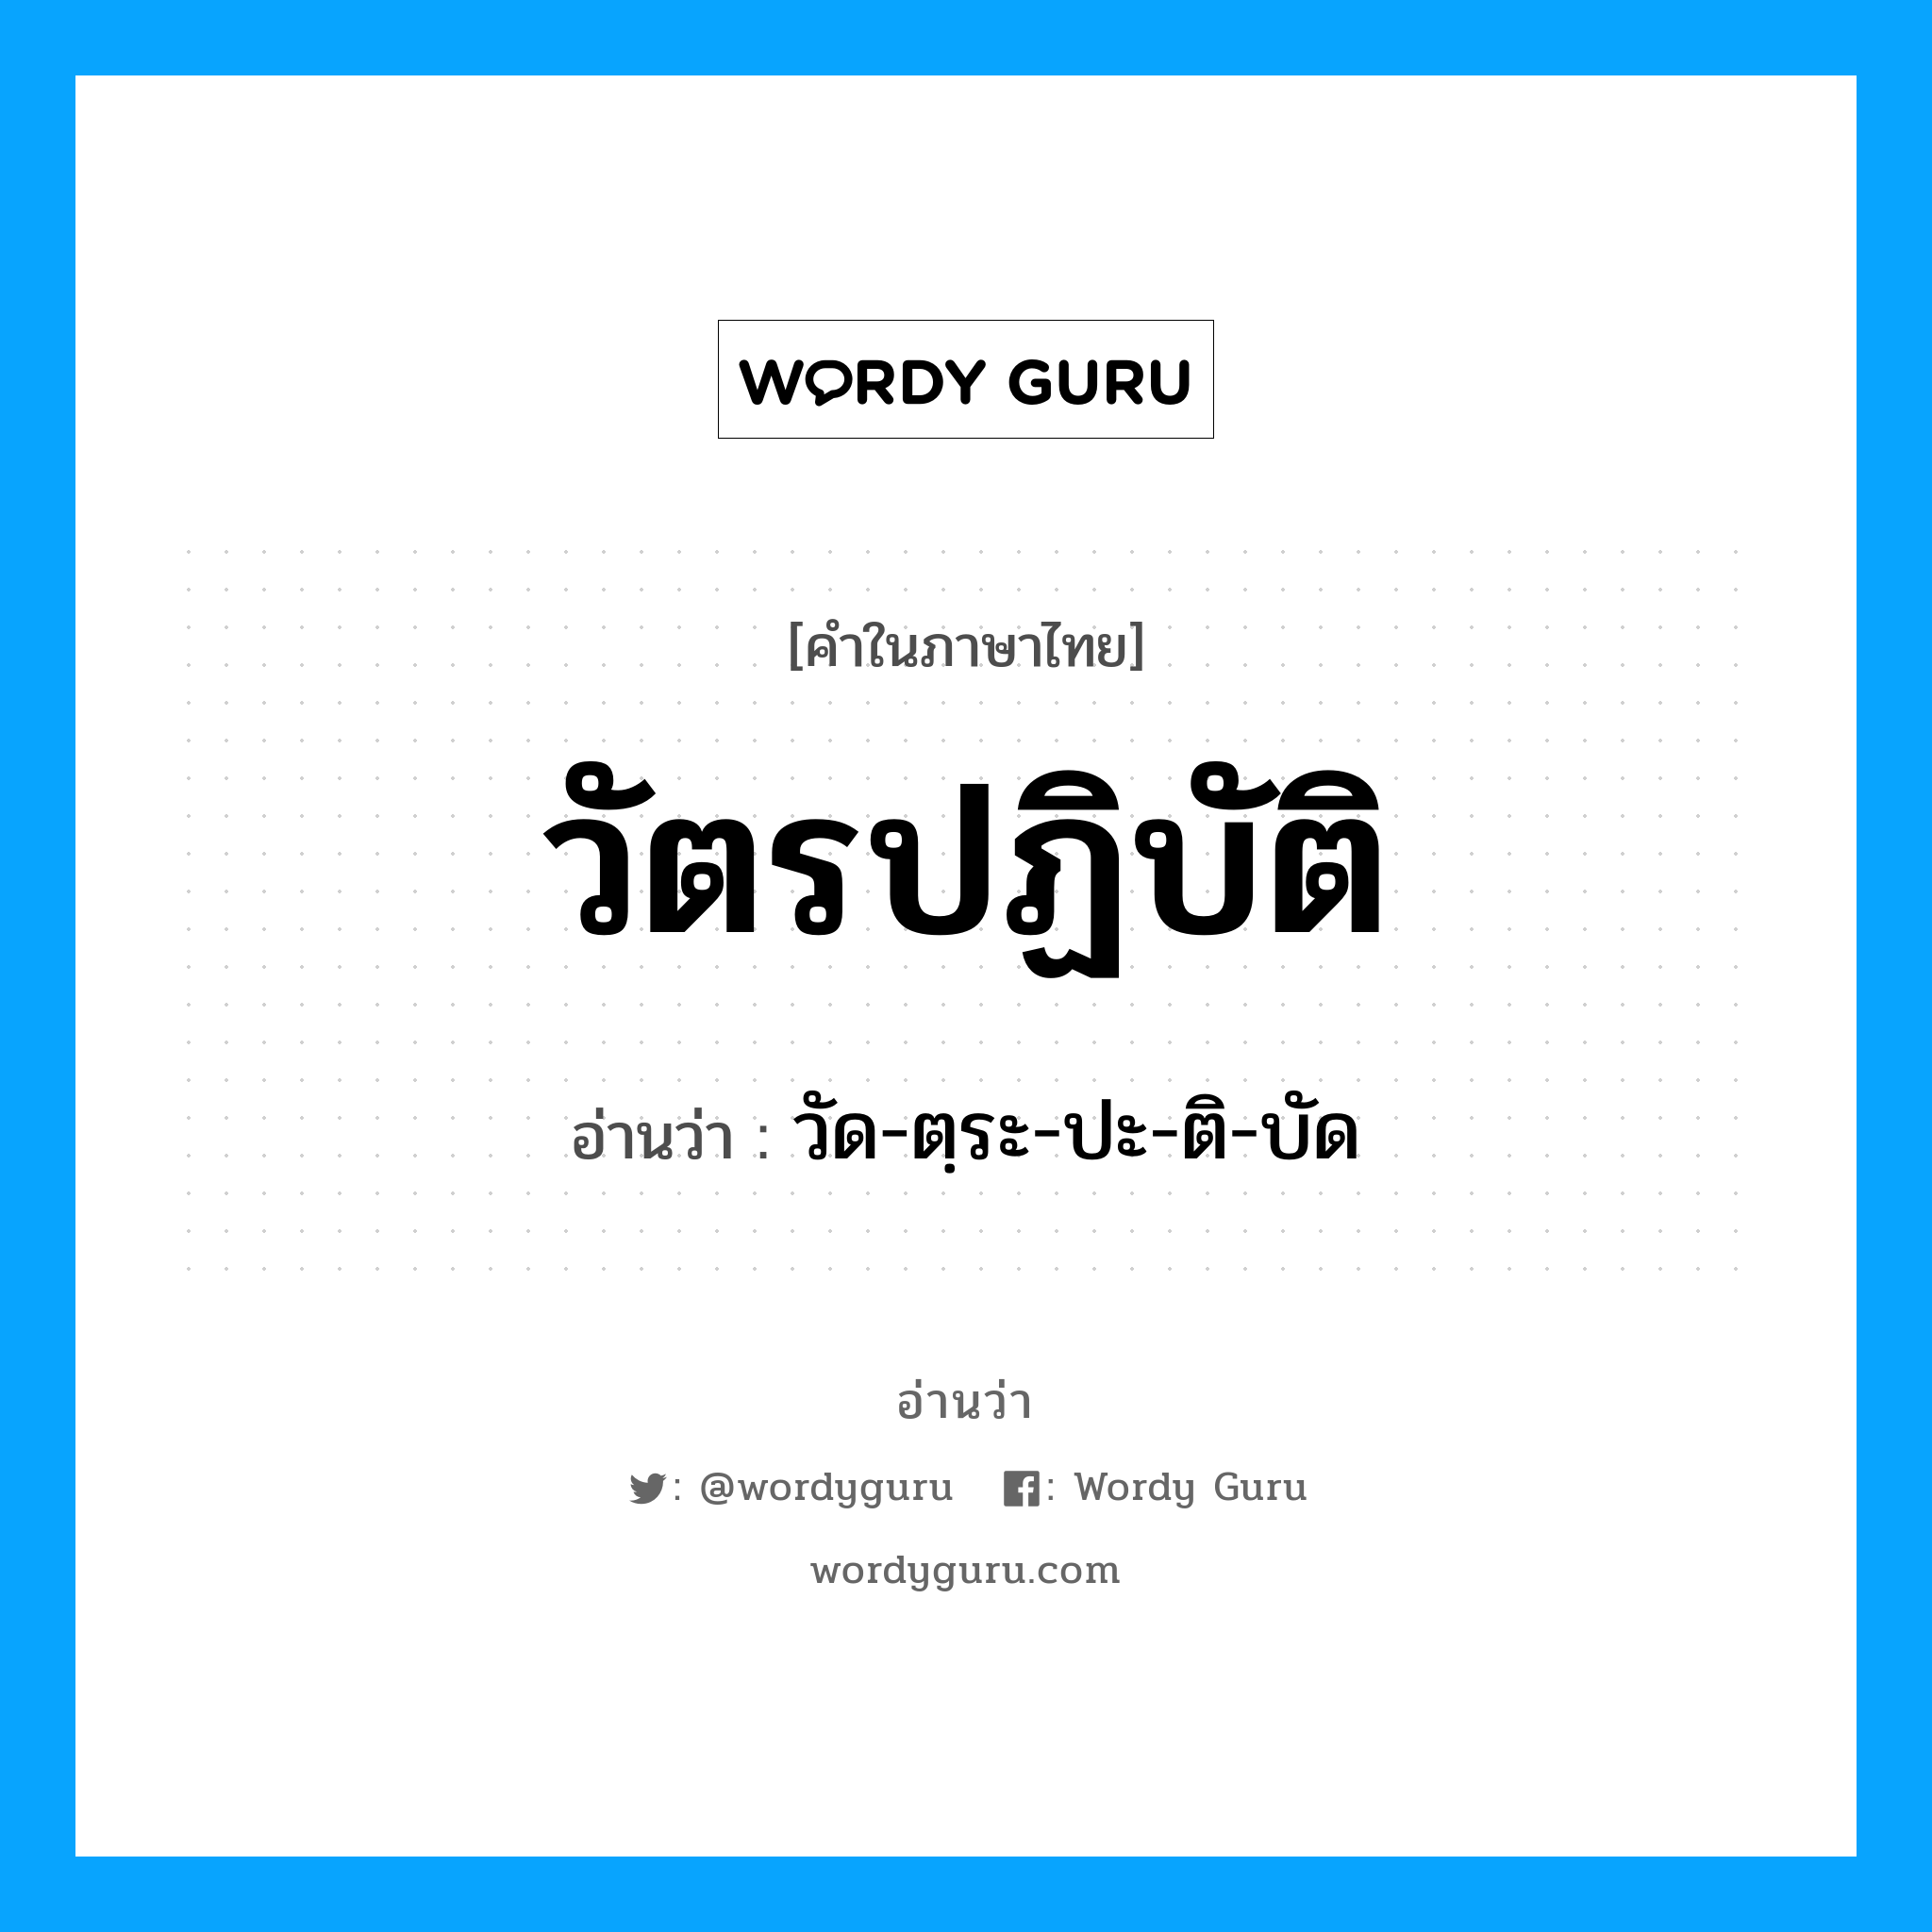 วัด-ตฺระ-ปะ-ติ-บัด เป็นคำอ่านของคำไหน?, คำในภาษาไทย วัด-ตฺระ-ปะ-ติ-บัด อ่านว่า วัตรปฏิบัติ